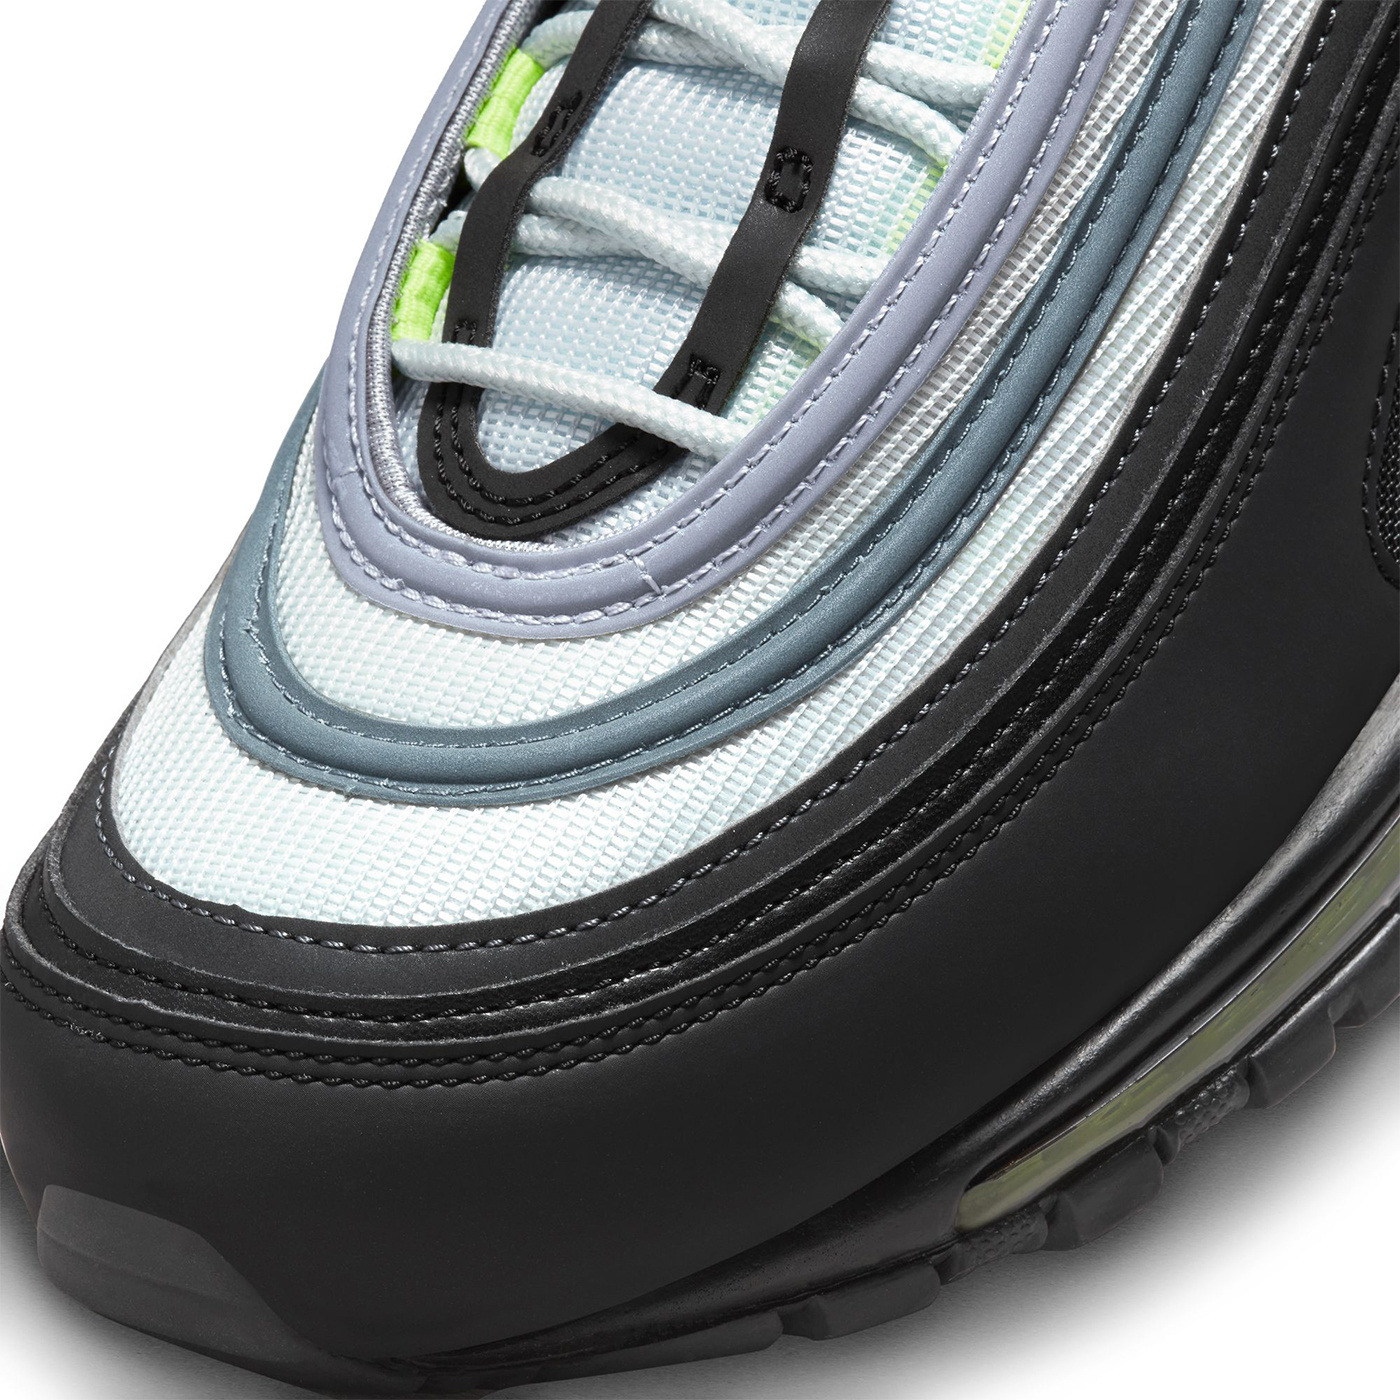 Nike Boys Air Max 97 - Shoes Pure Platinum/Black/Volt Size 07.0